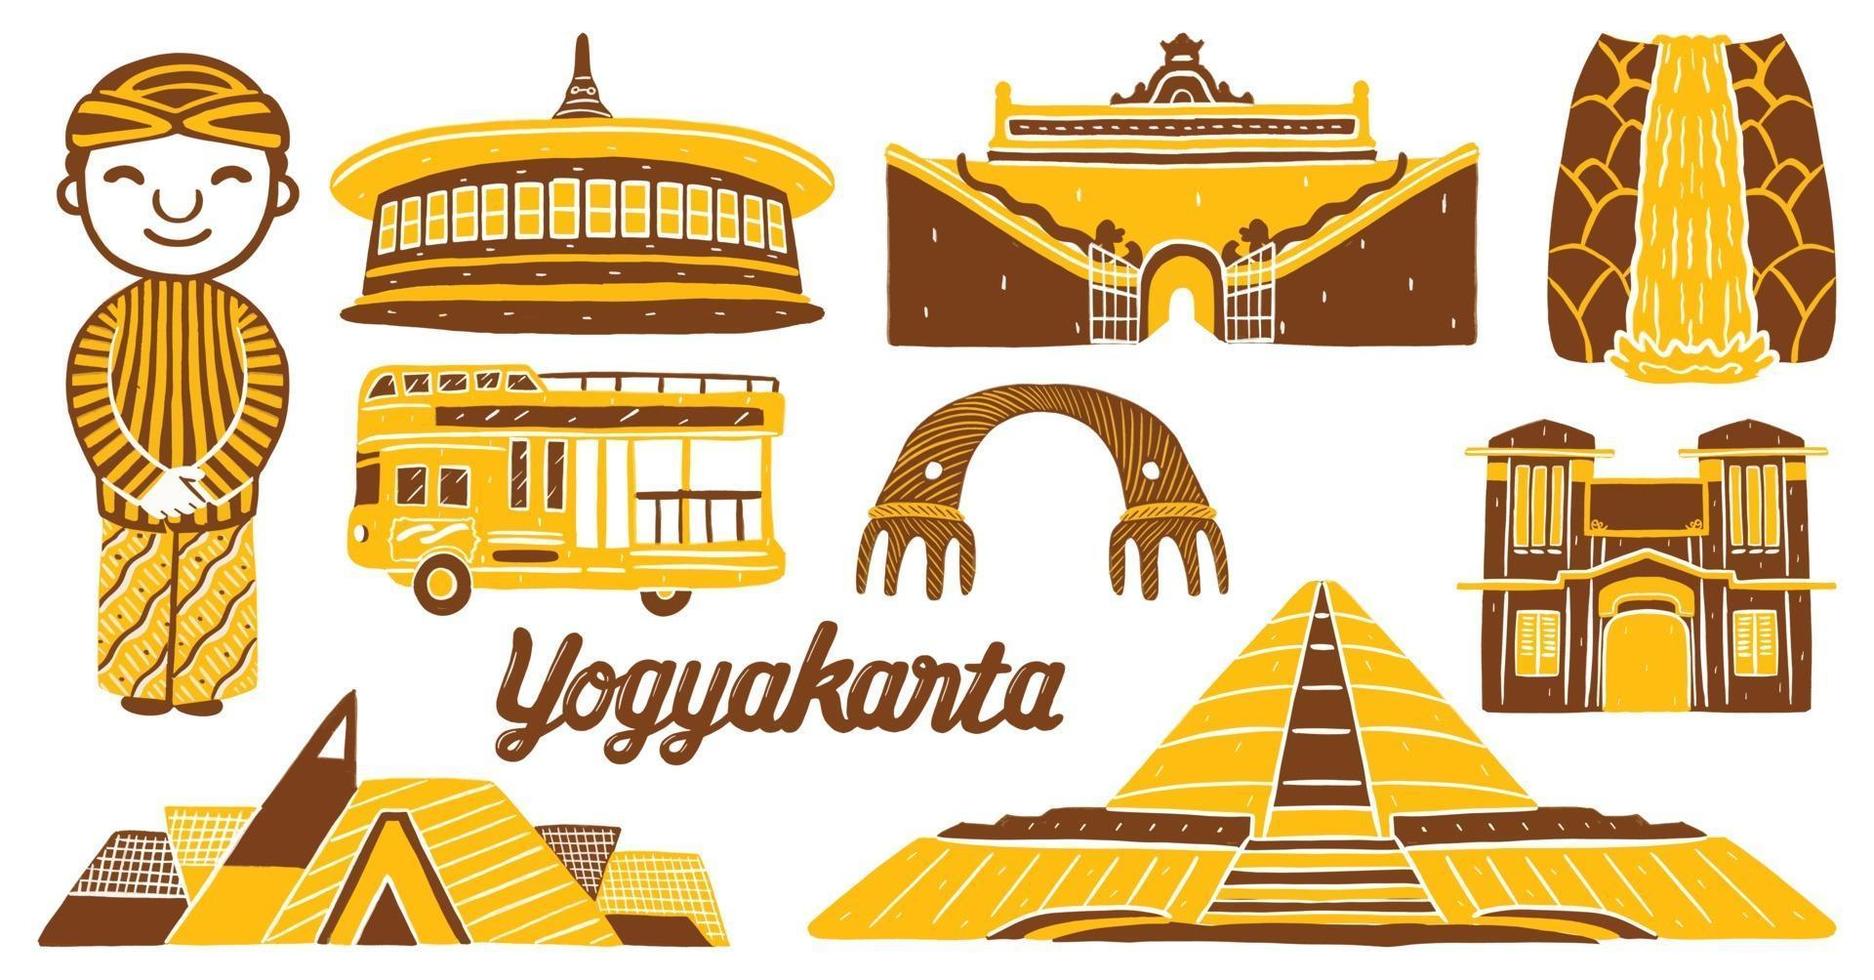 Marco da cidade de Yogyakarta em estilo design plano vetor